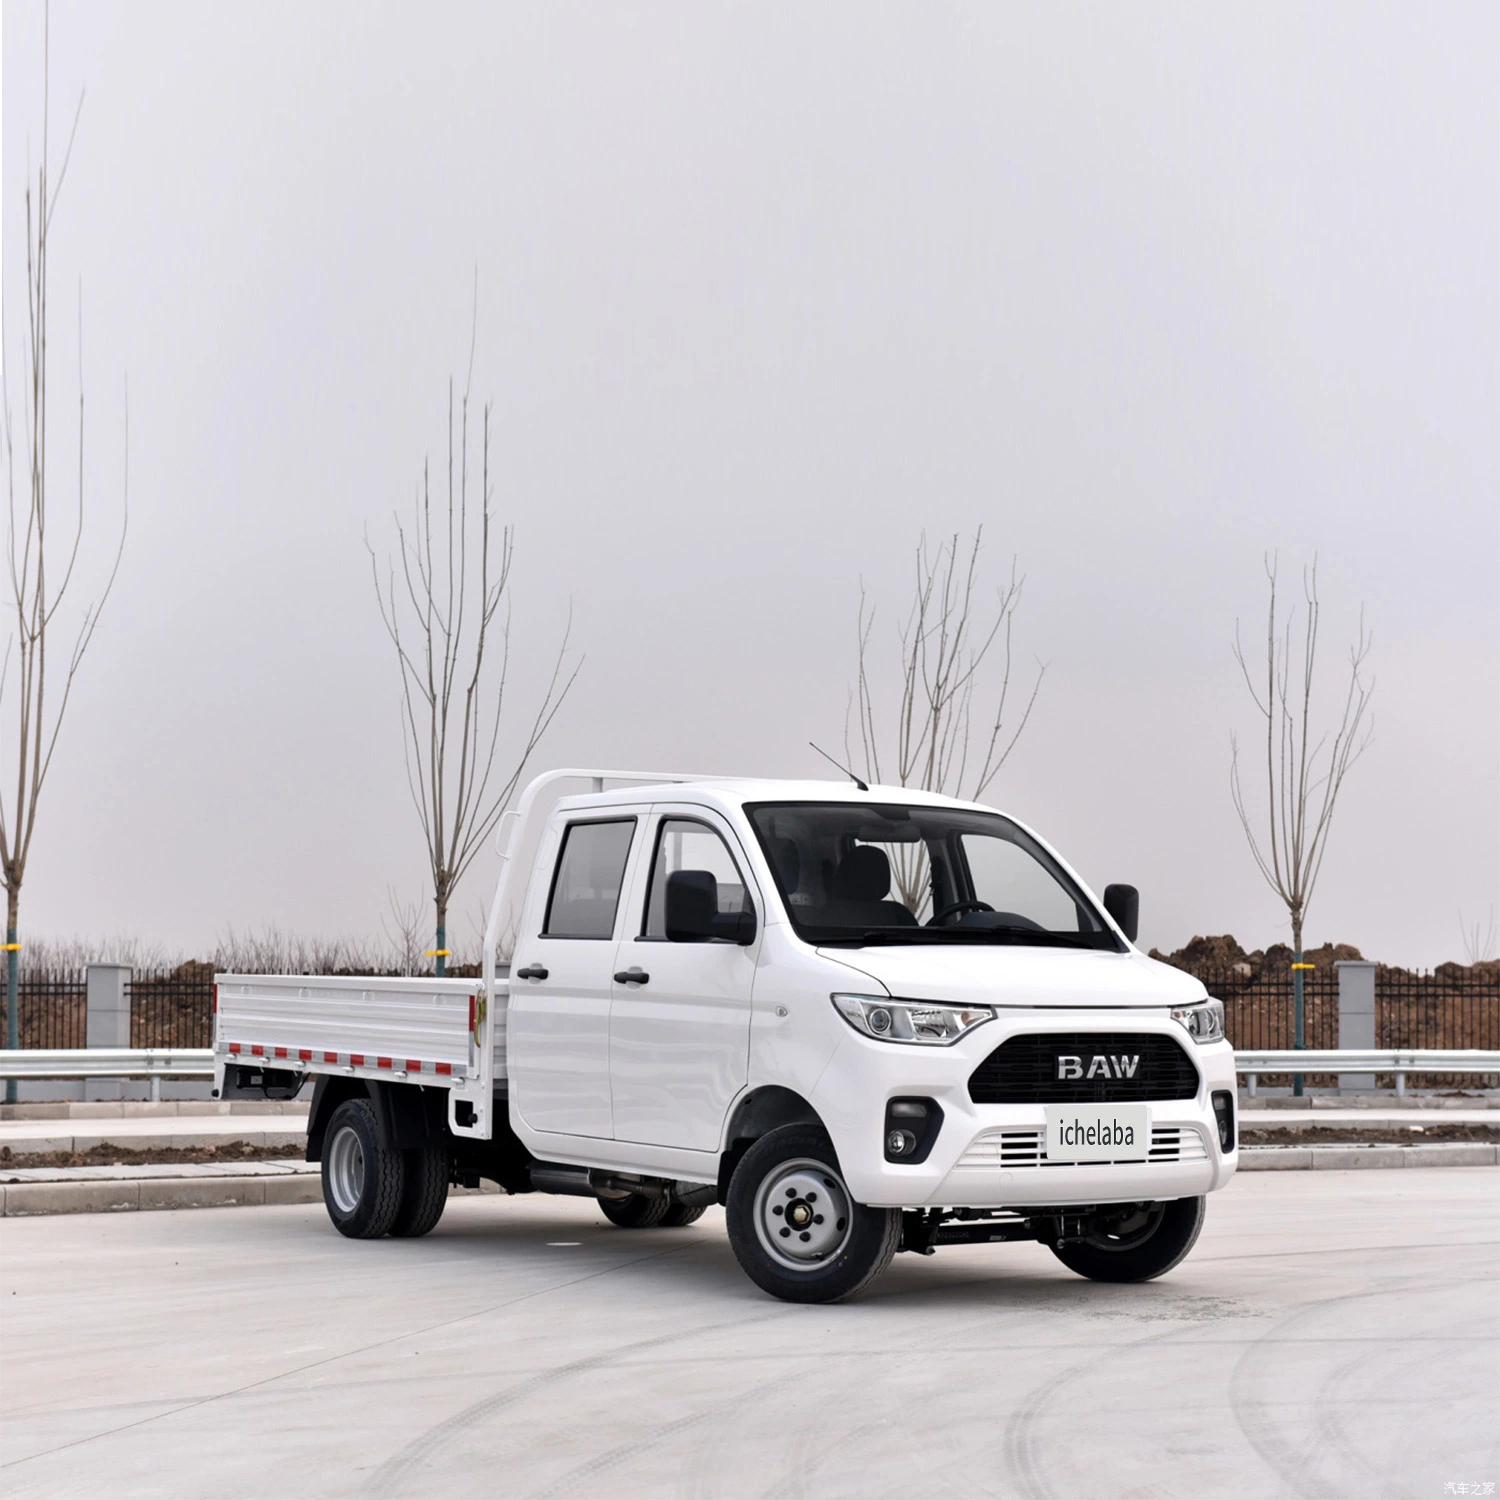 شاحنة مستعملة لنقل البضائع الثقيلة من طراز تي 7 إنرجي هيفي ديوتي تيبر من الصين BAW، وشاحنة بيك اب كهربائية صغيرة.